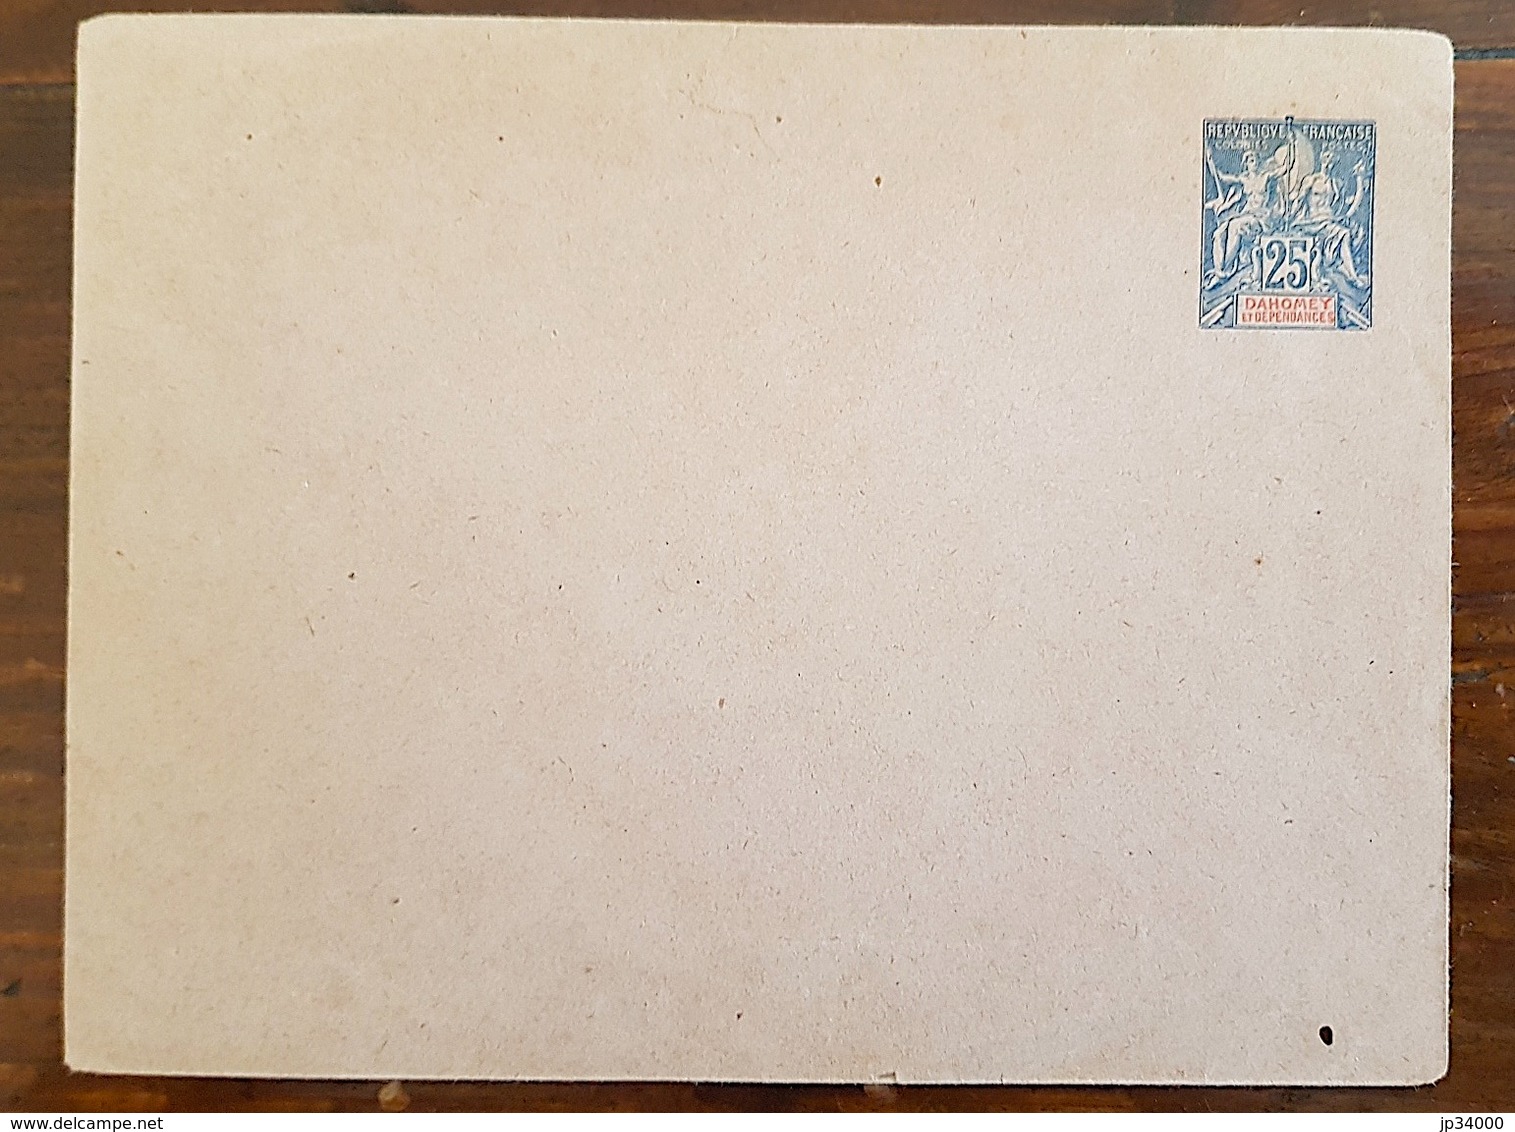 DAHOMEY. Type Groupe. Entier Postal Neuf. Enveloppe 25c Bleu. (Enveloppe) - Lettres & Documents